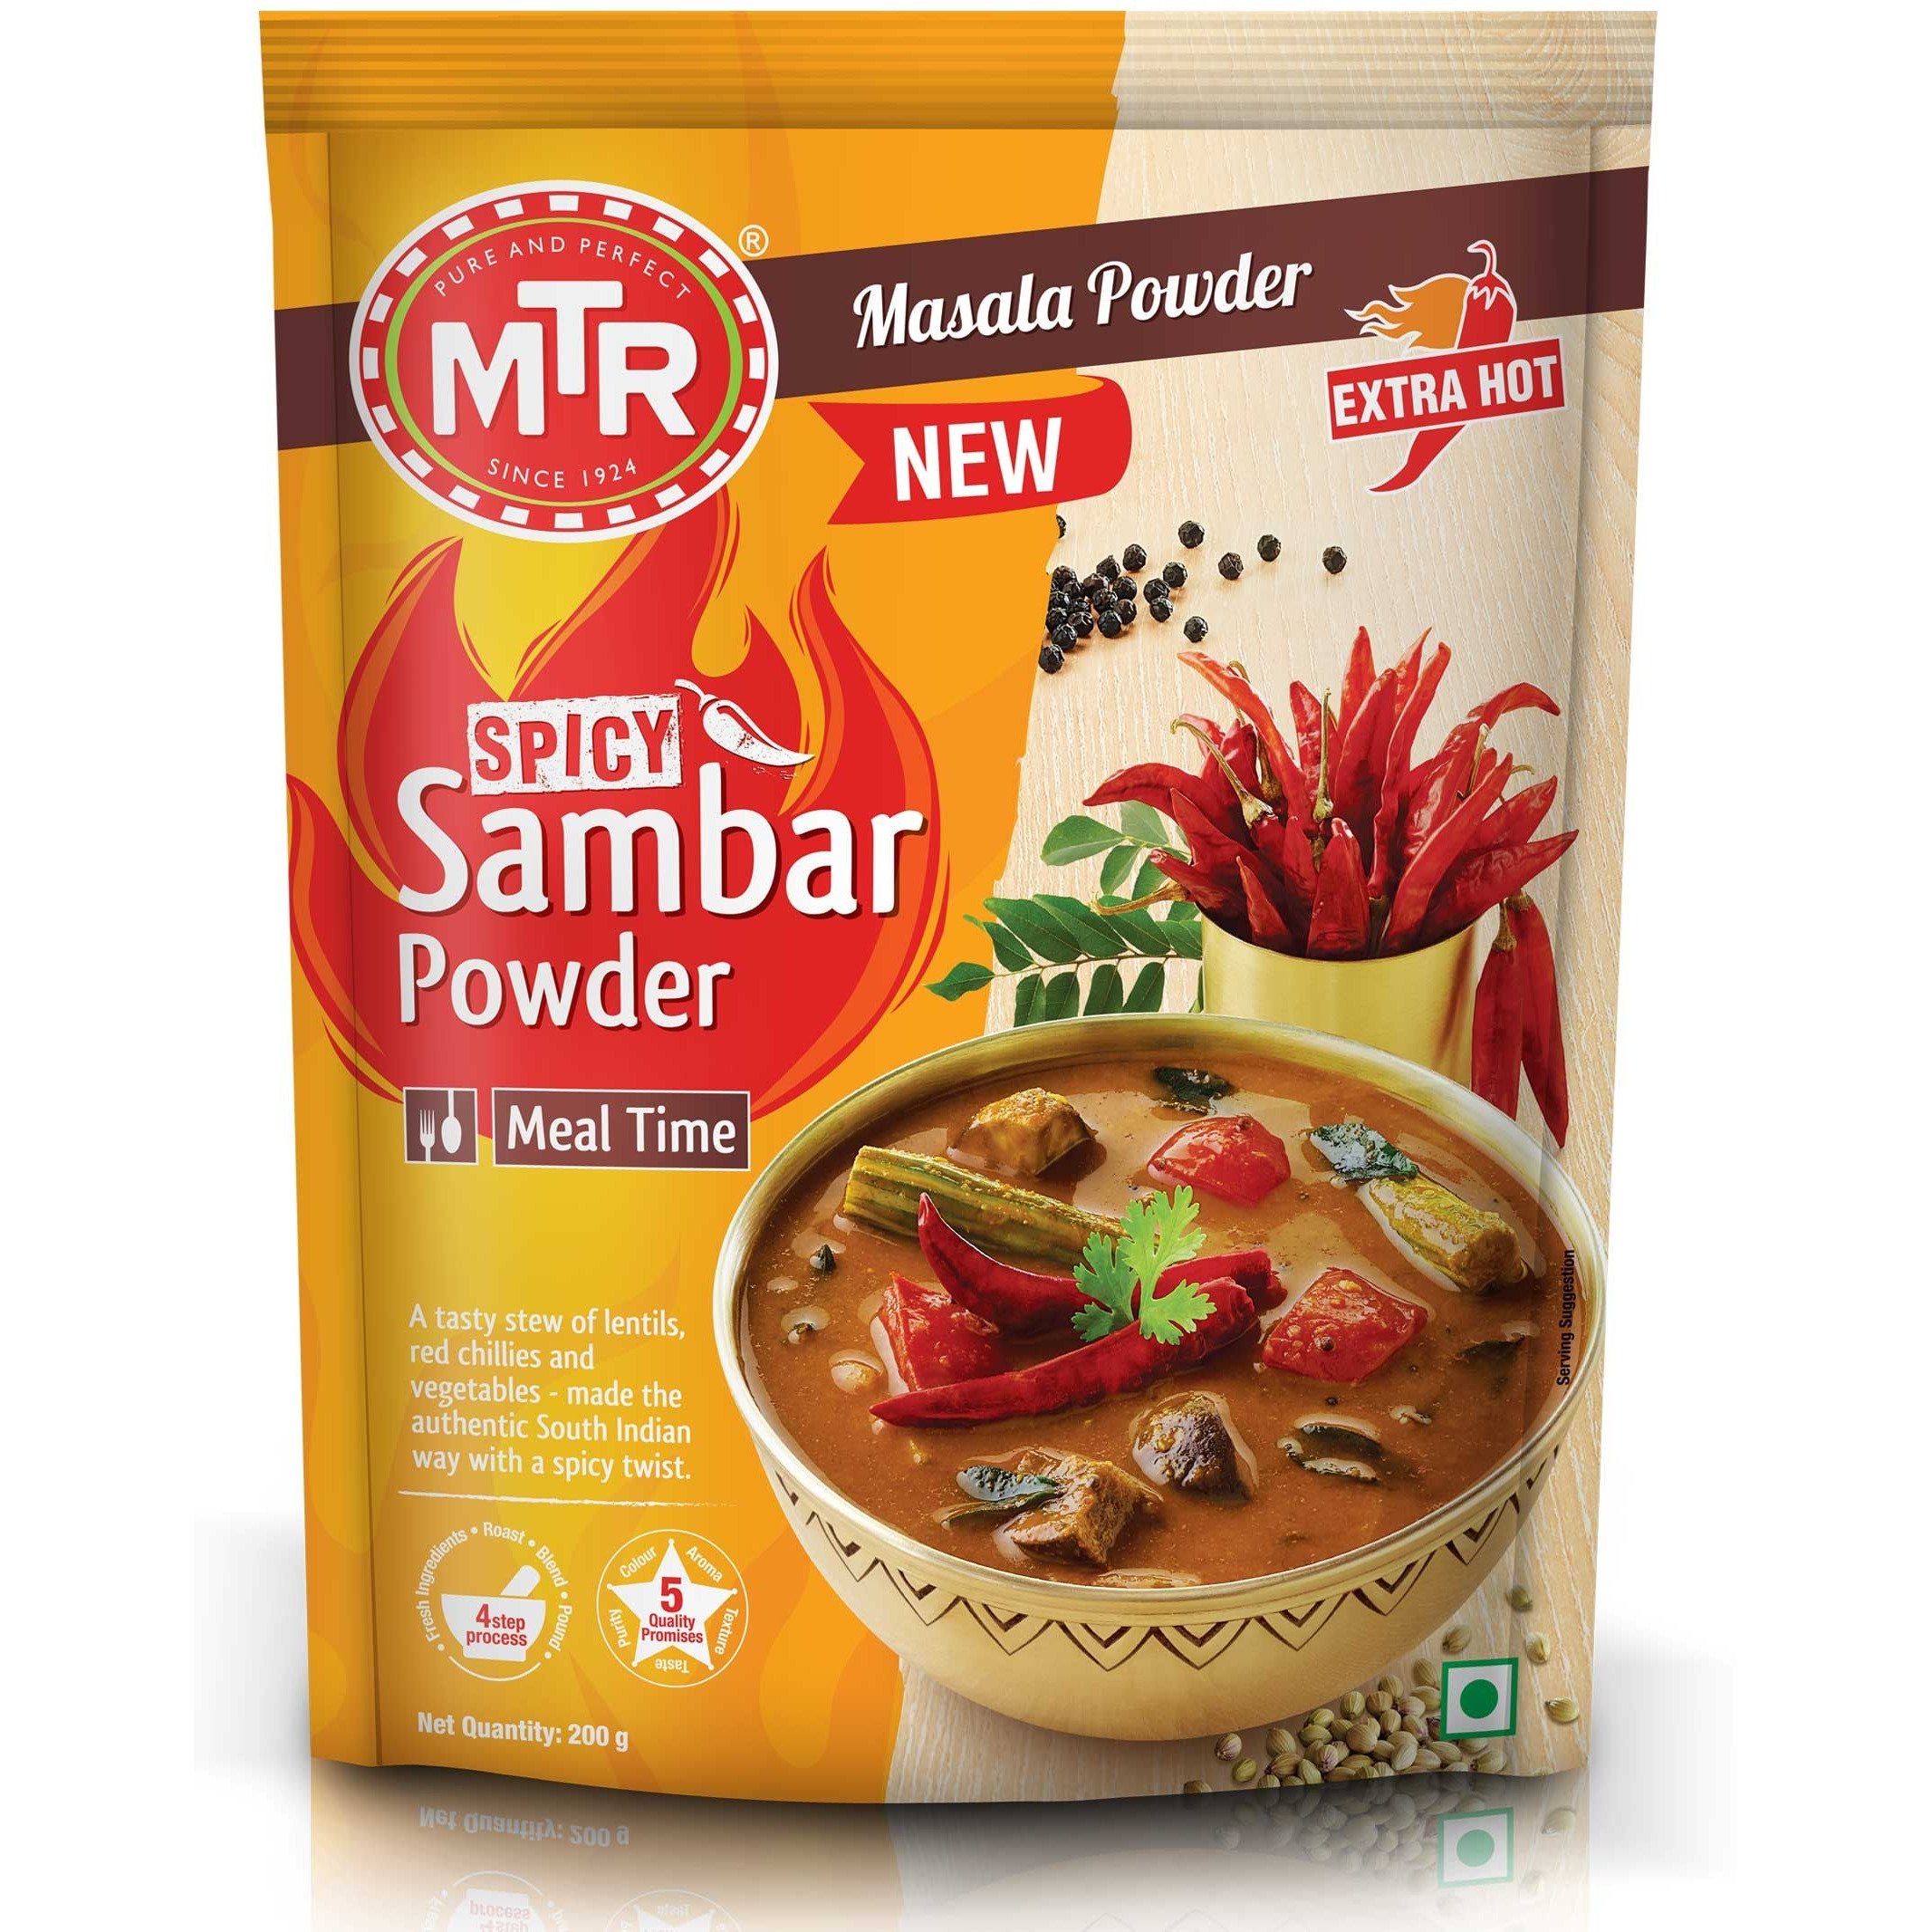 Case of 36 - Mtr Spicy Sambar Powder Extra Hot - 100 Gm (3.5 Oz)